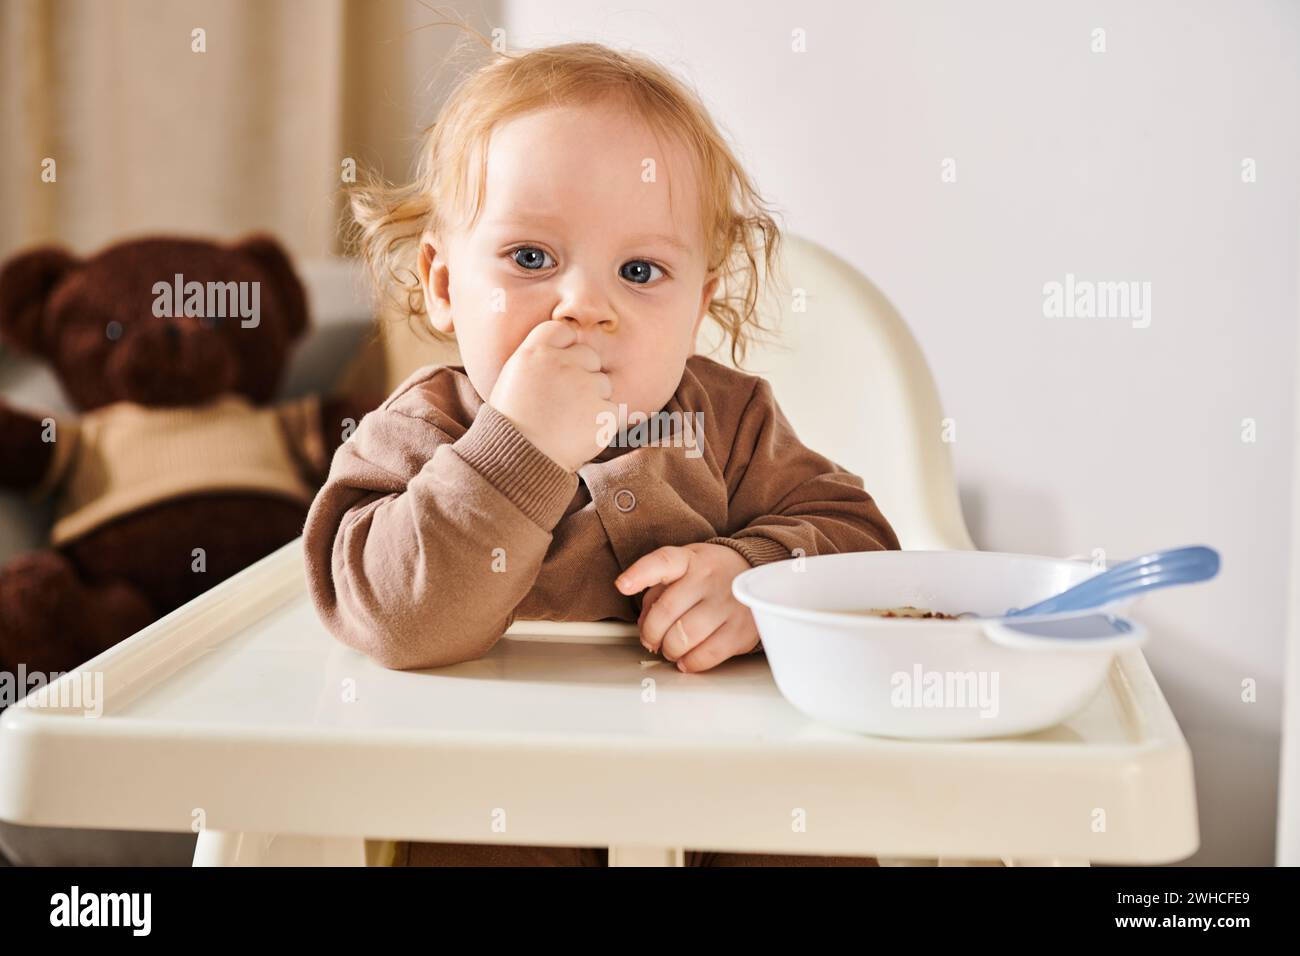 Niedlicher Kleinkinder im Kinderstuhl, der in die Kamera neben der Schüssel blickt, mit Frühstück im gemütlichen Kinderzimmer Stockfoto